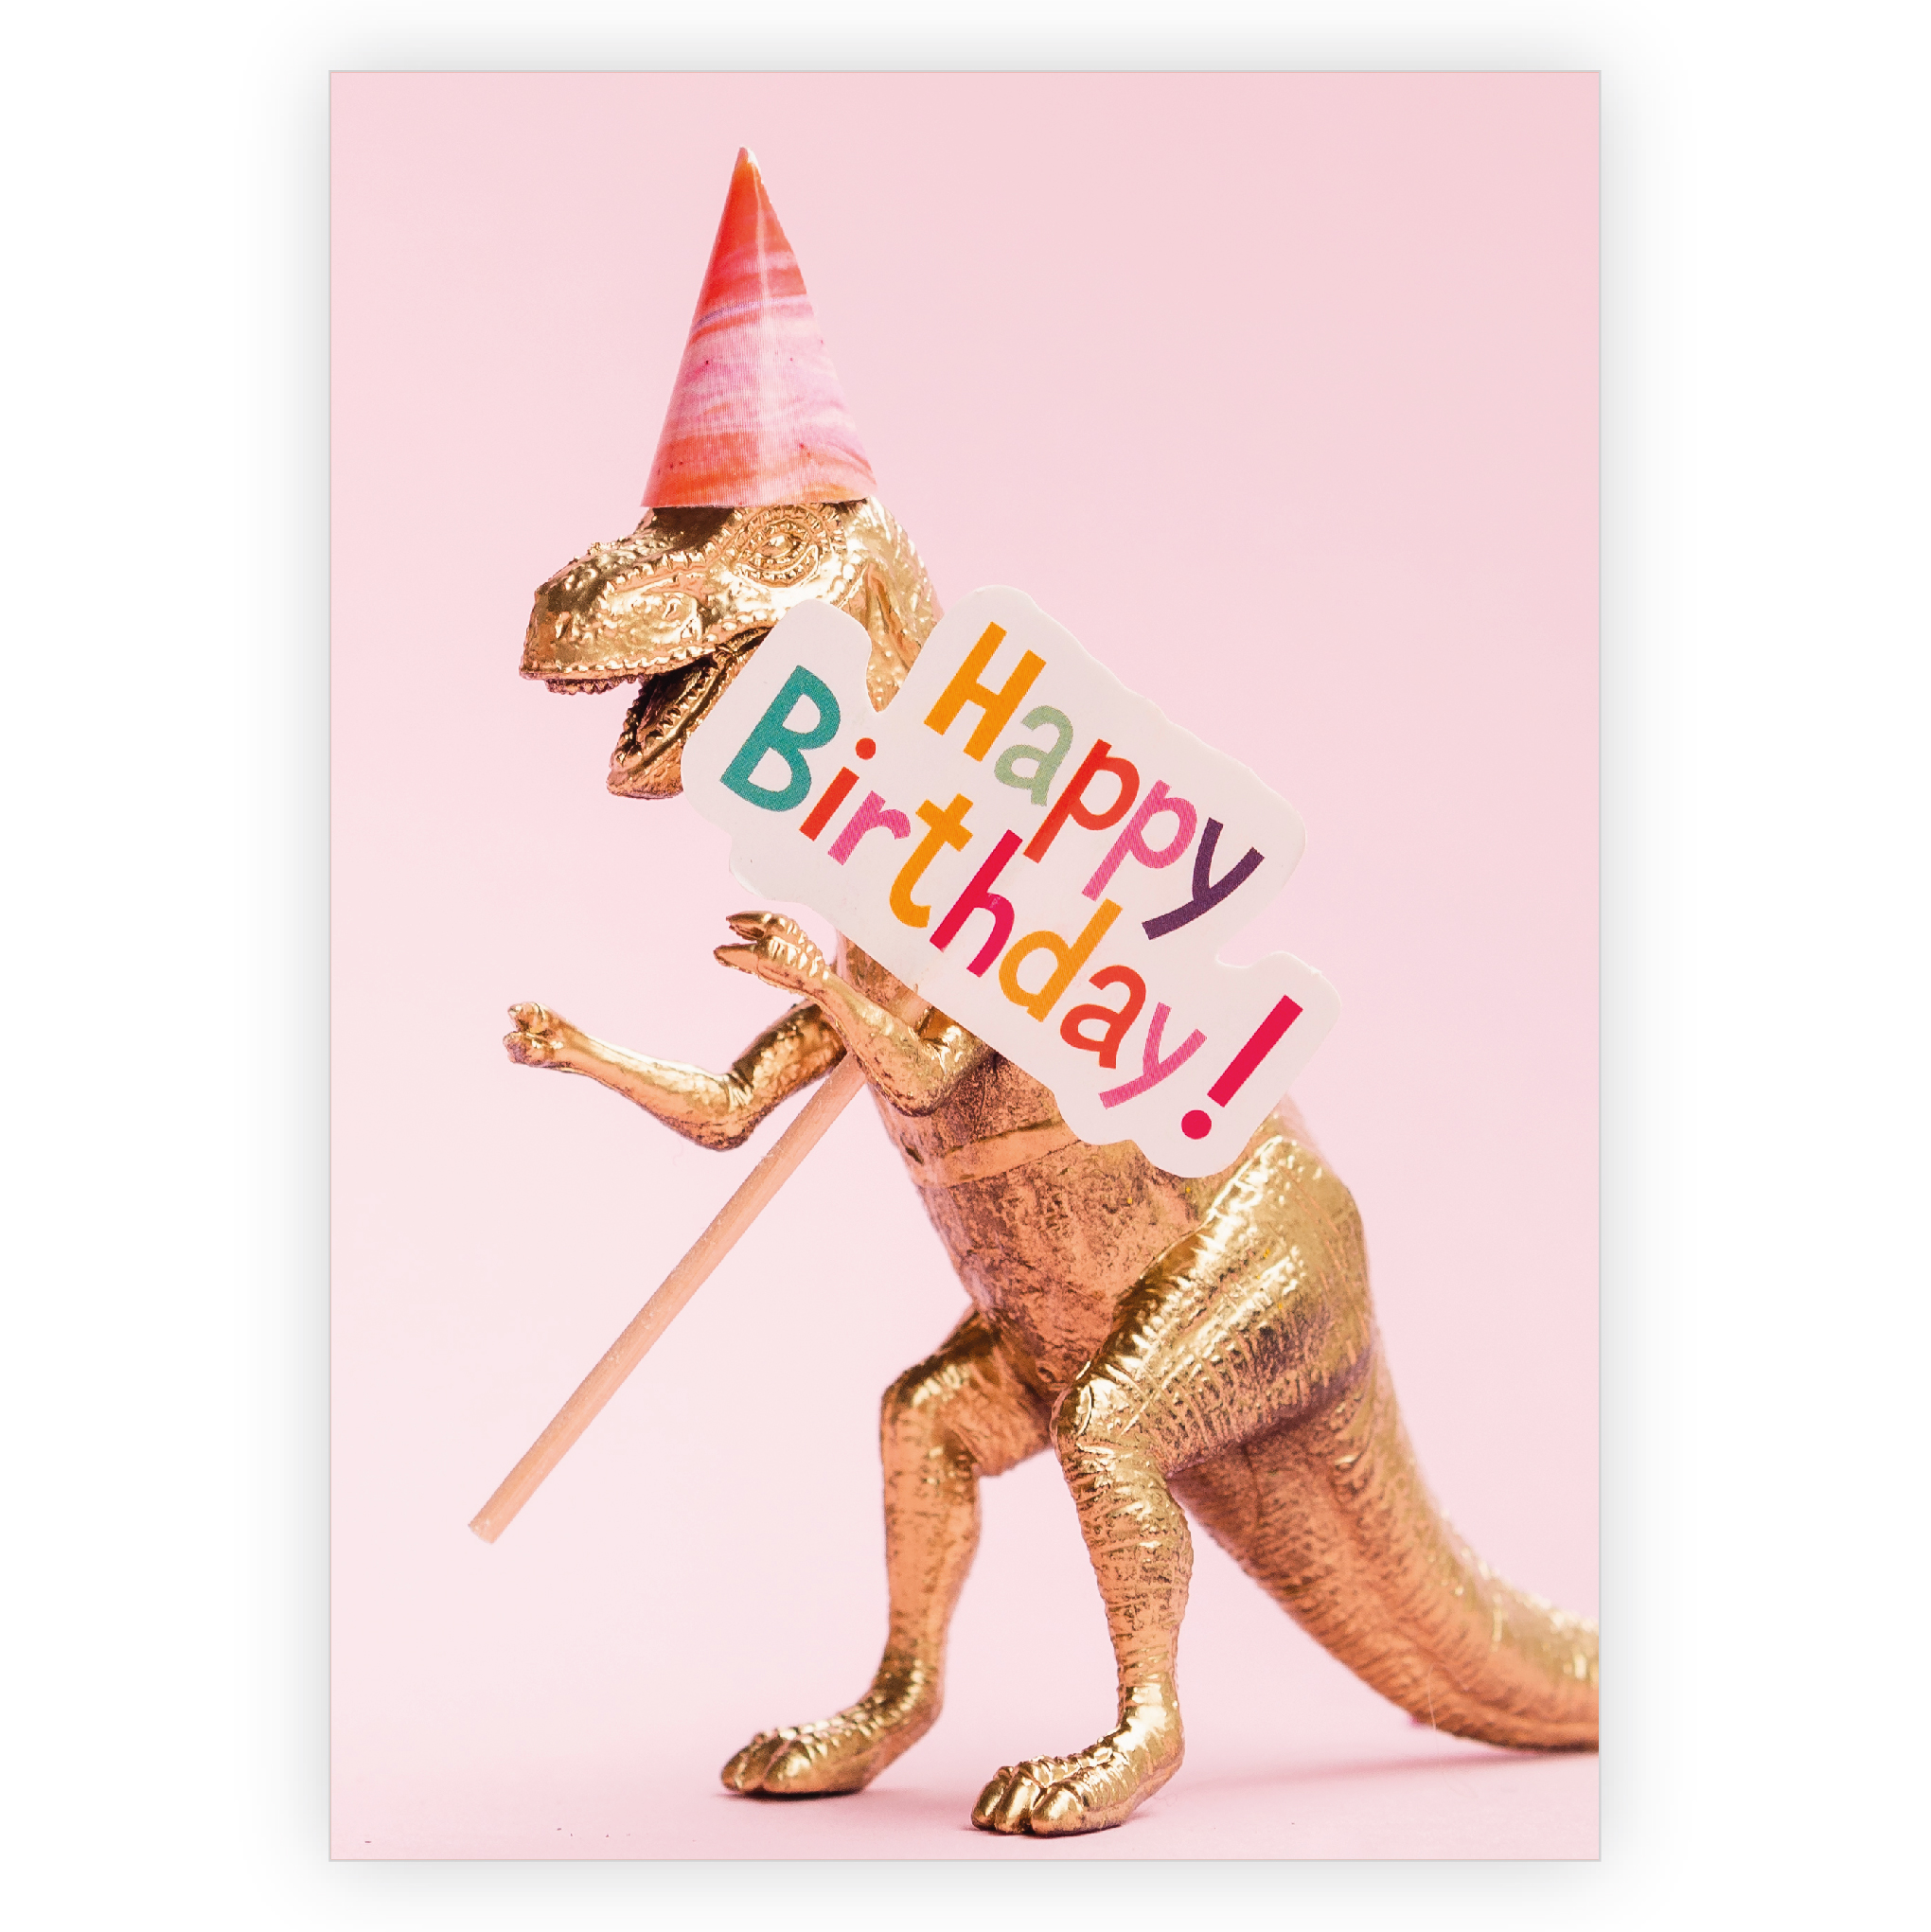 Coole Dinosaurier Geburtstagskarte um mit  Humor fröhlich Happy Birthday zu wünschen 1 nachhaltig produzierte Klappkarte  inklusive Umschlag made in germany von Kartenkaufrausch.de